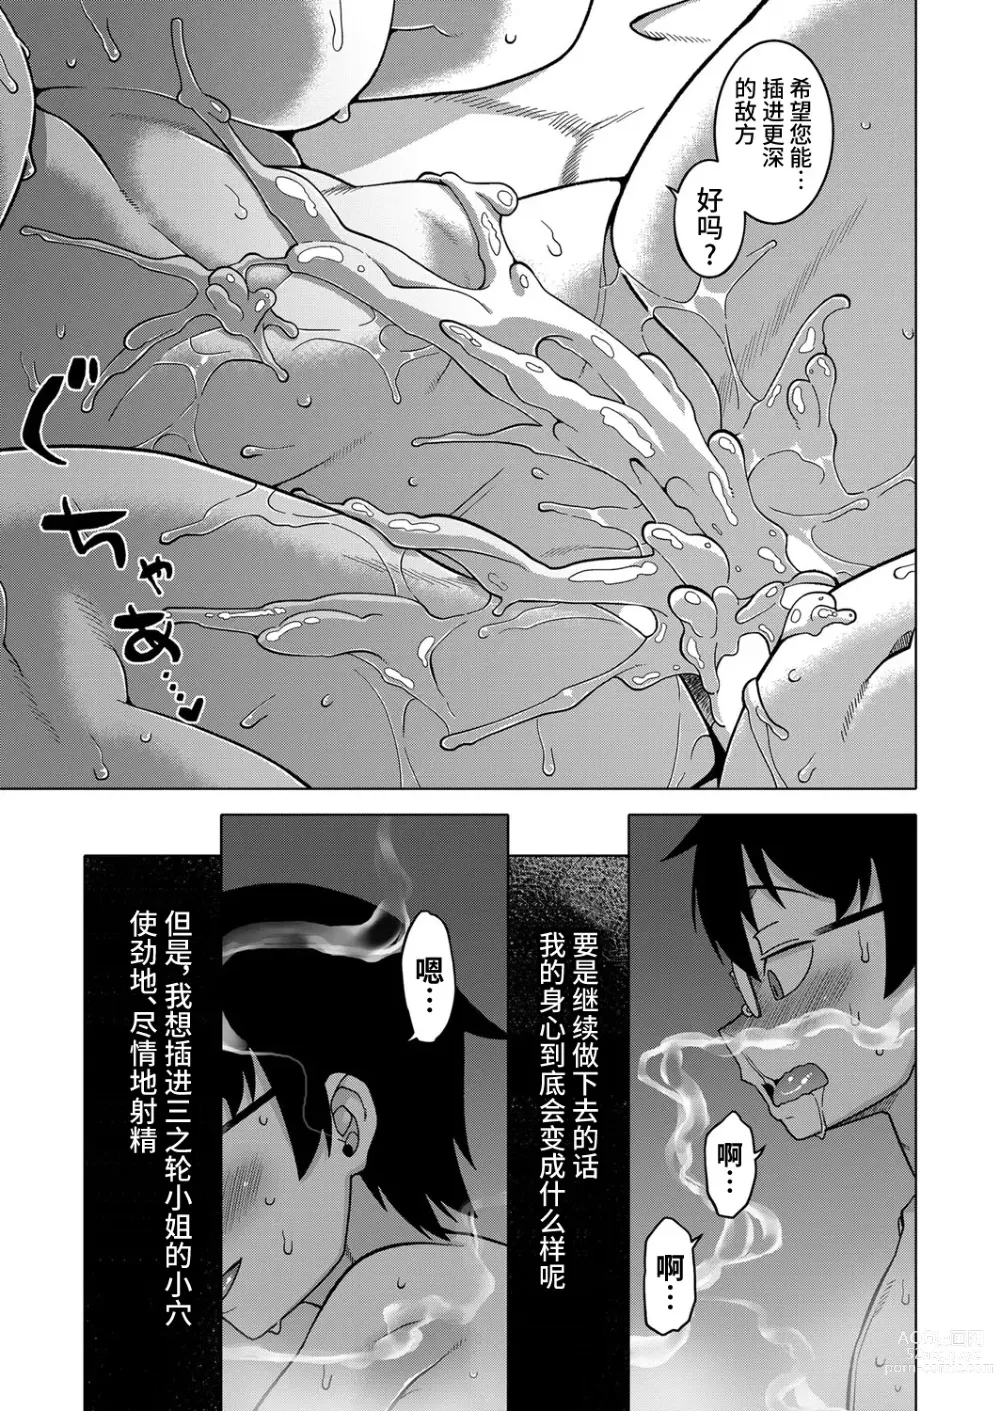 Page 186 of manga Kami-sama no Tsukurikata Ch. 1-5